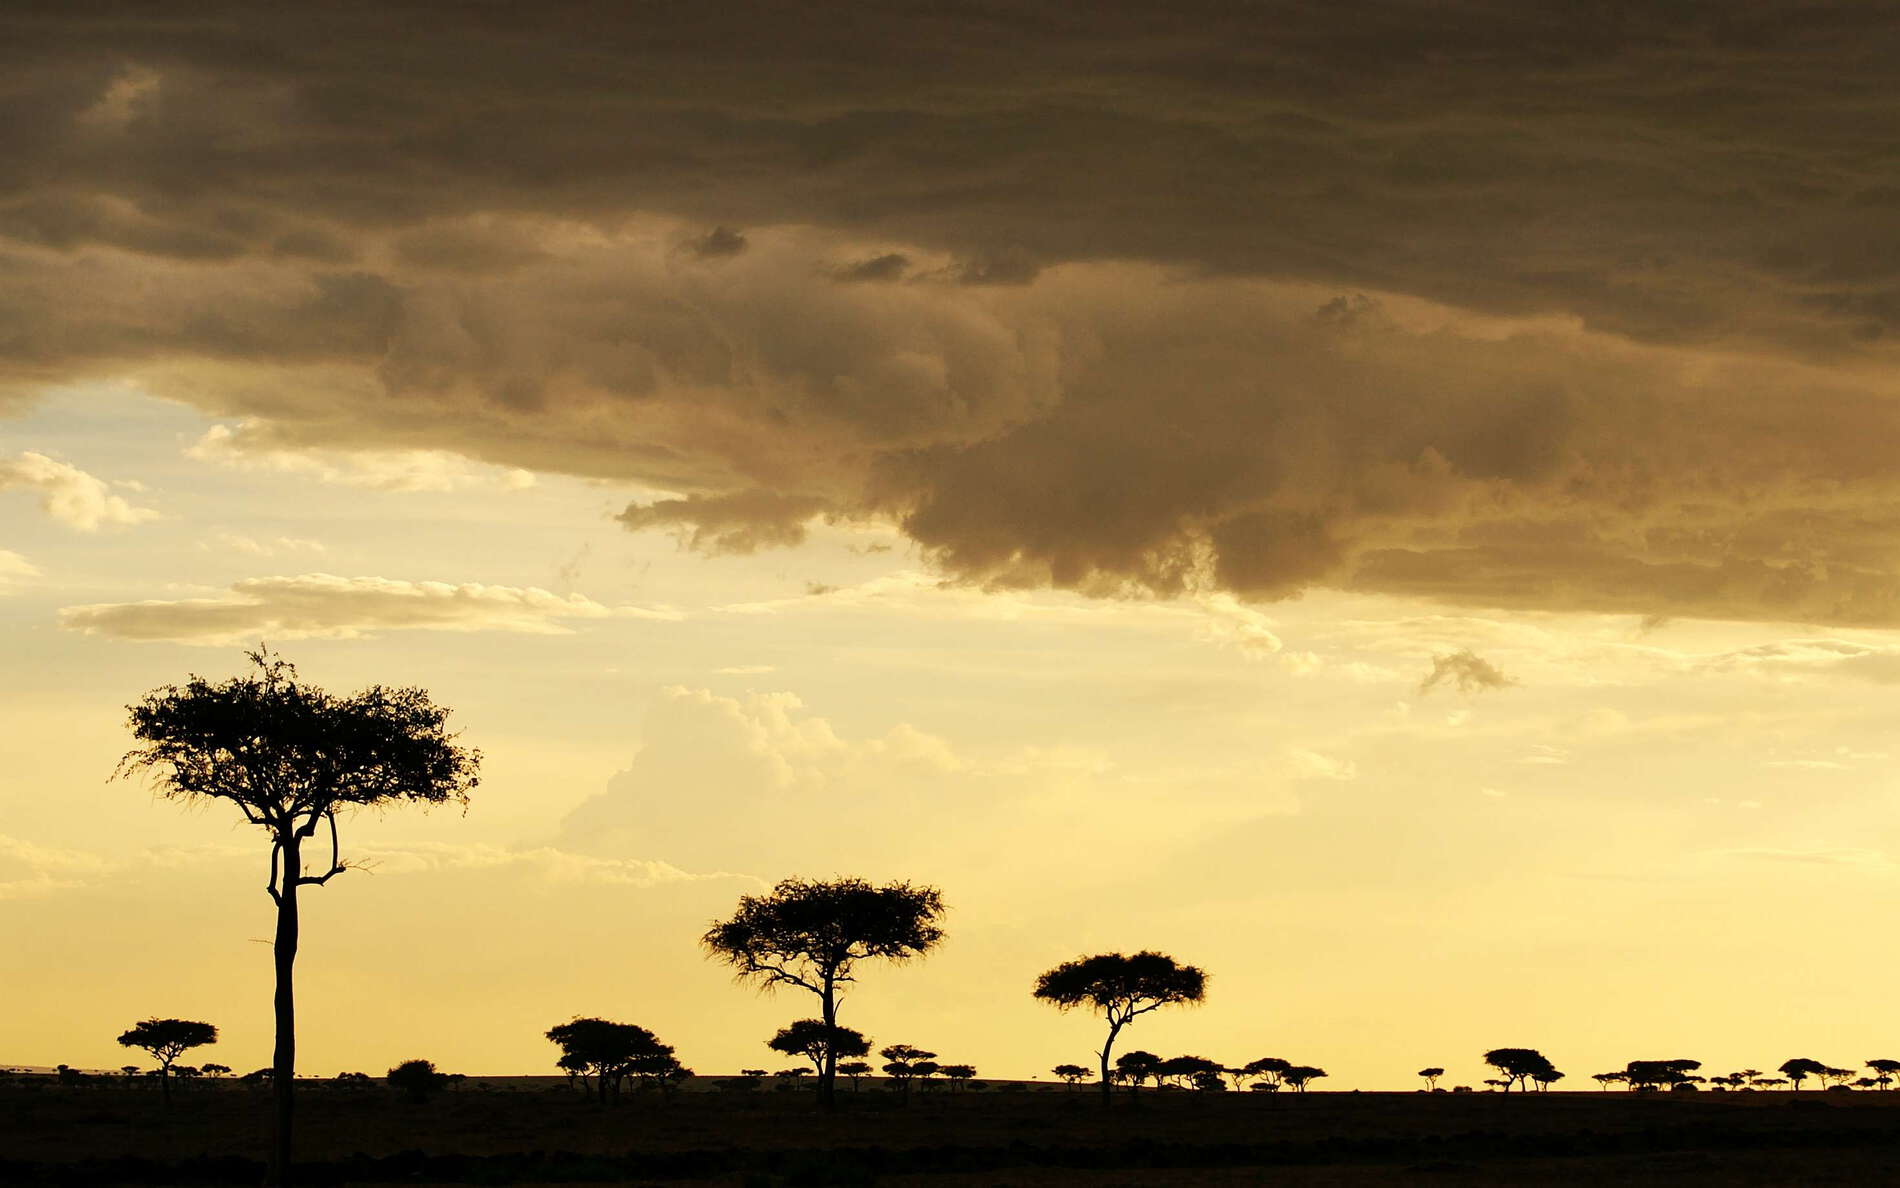 Masai Mara NR  |  Savanna